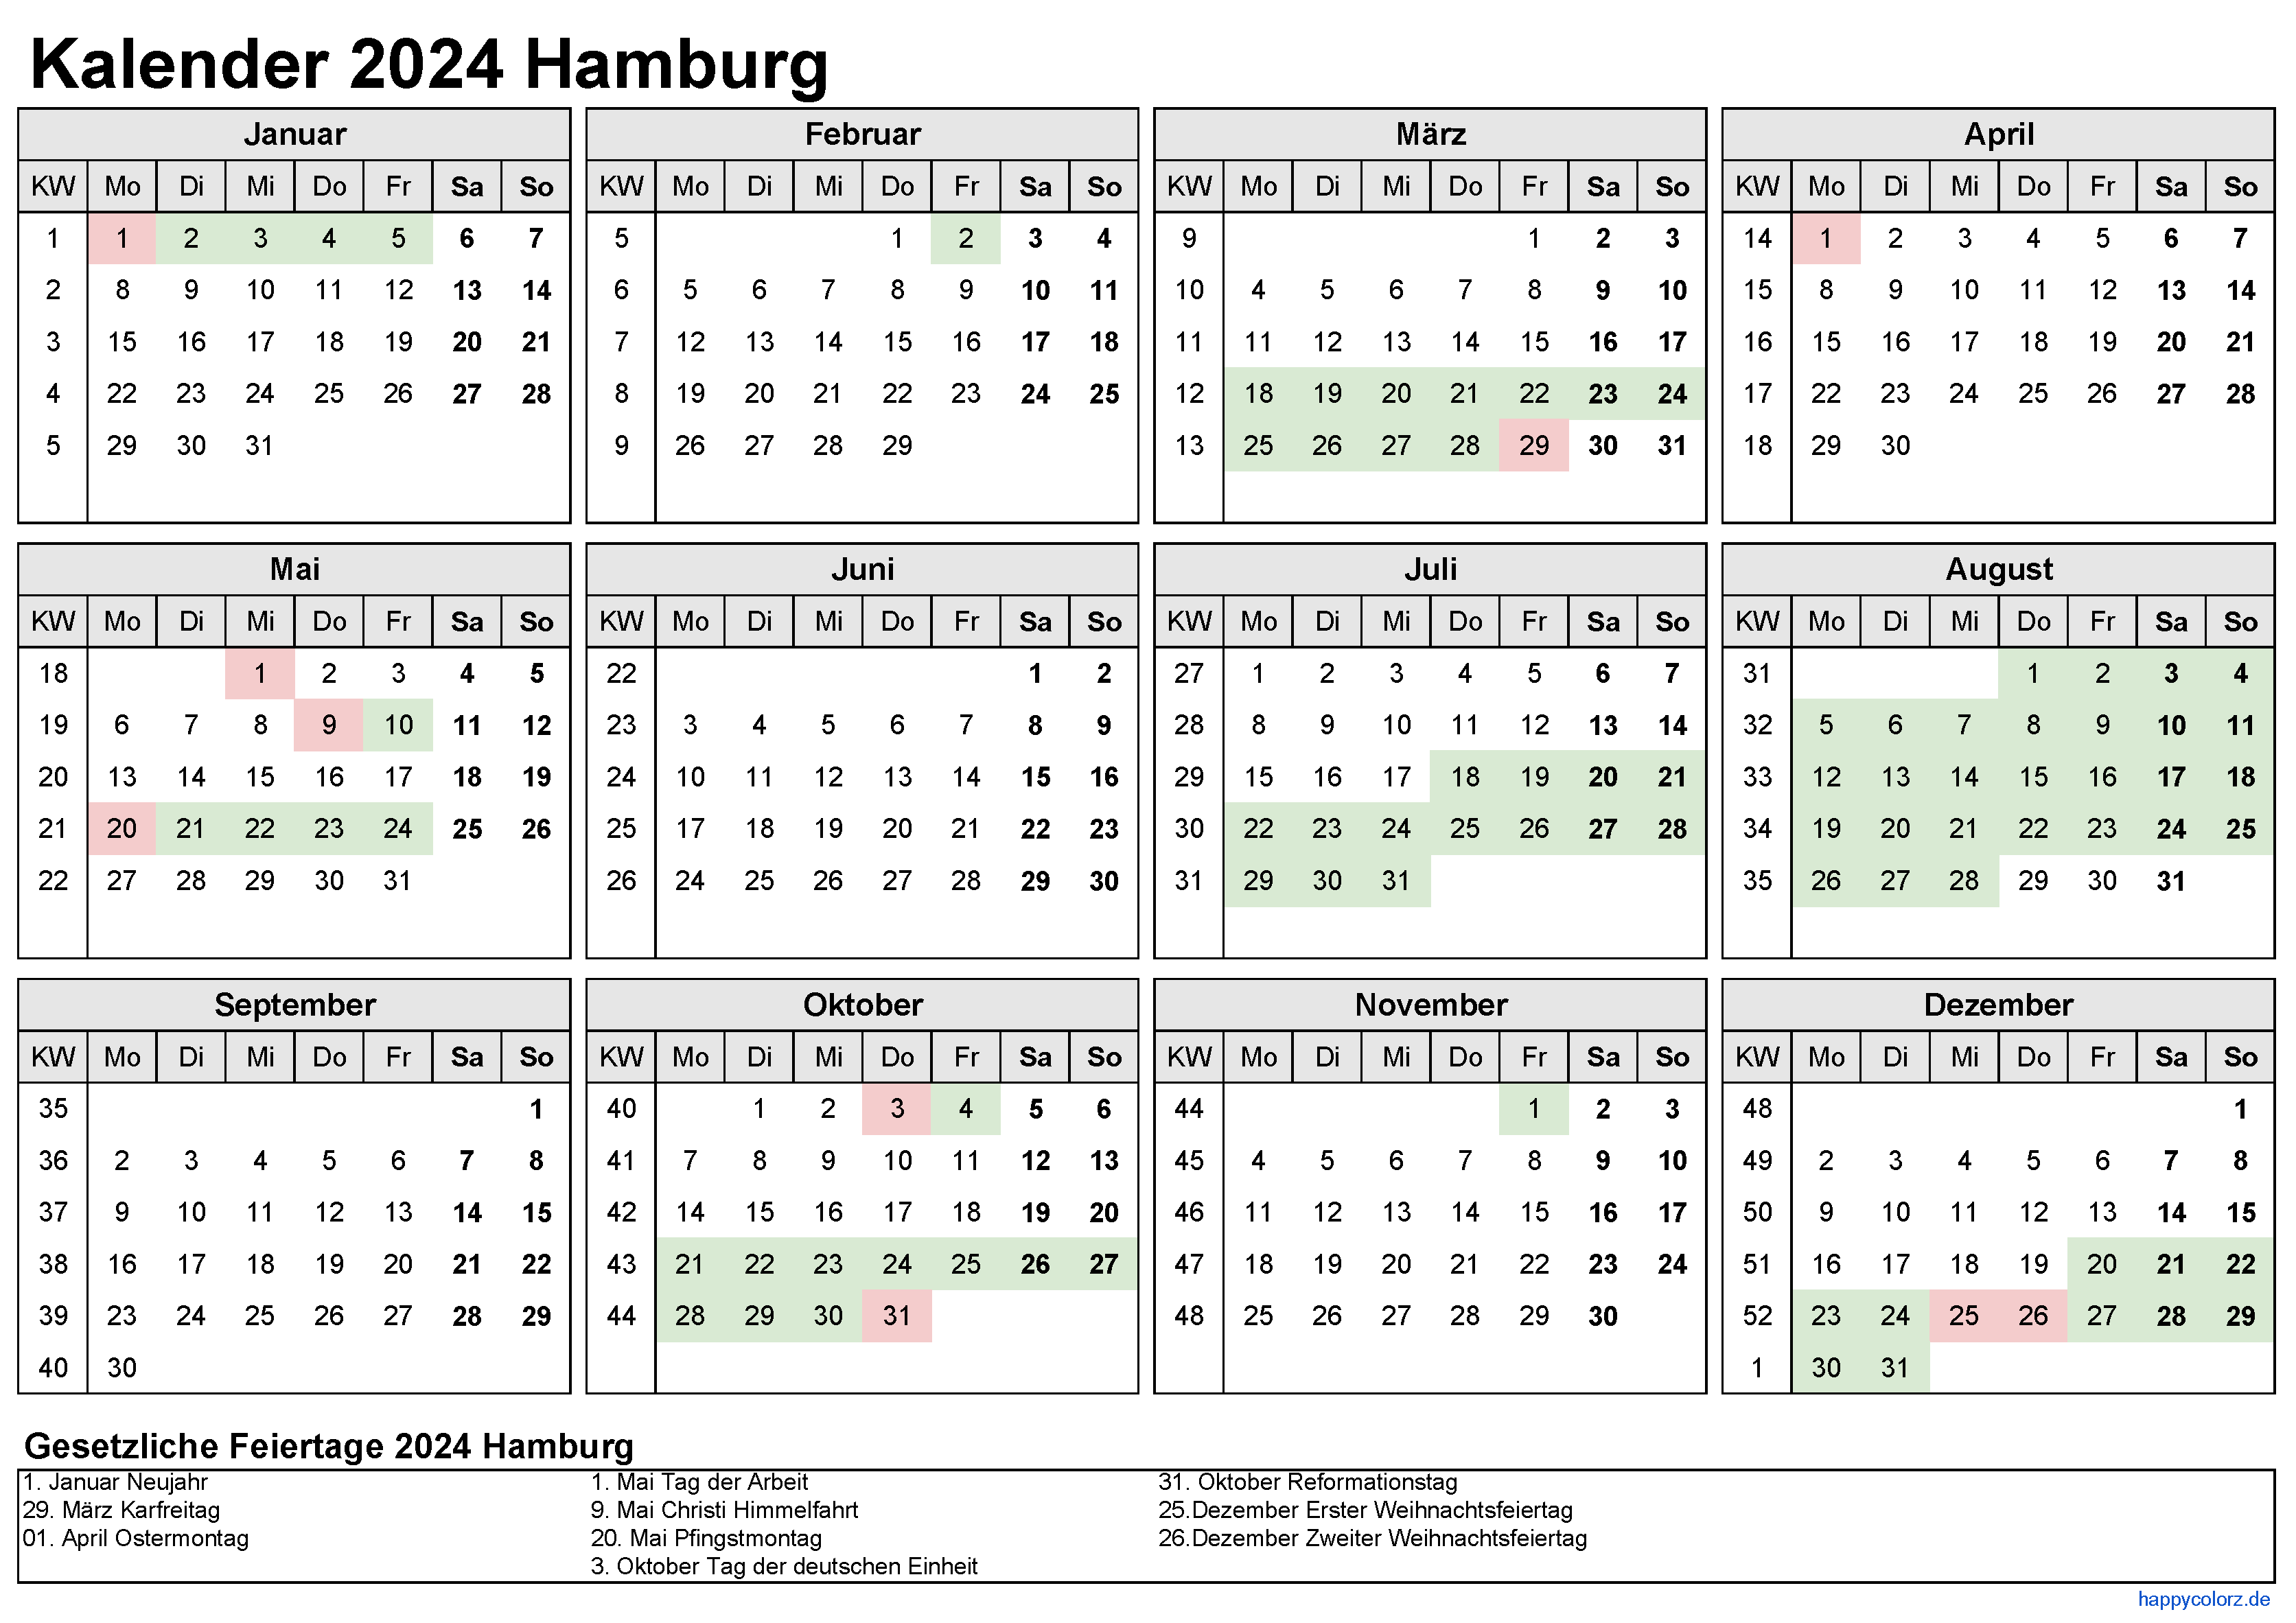 Kalender 2024 Hamburg zum Ausdrucken